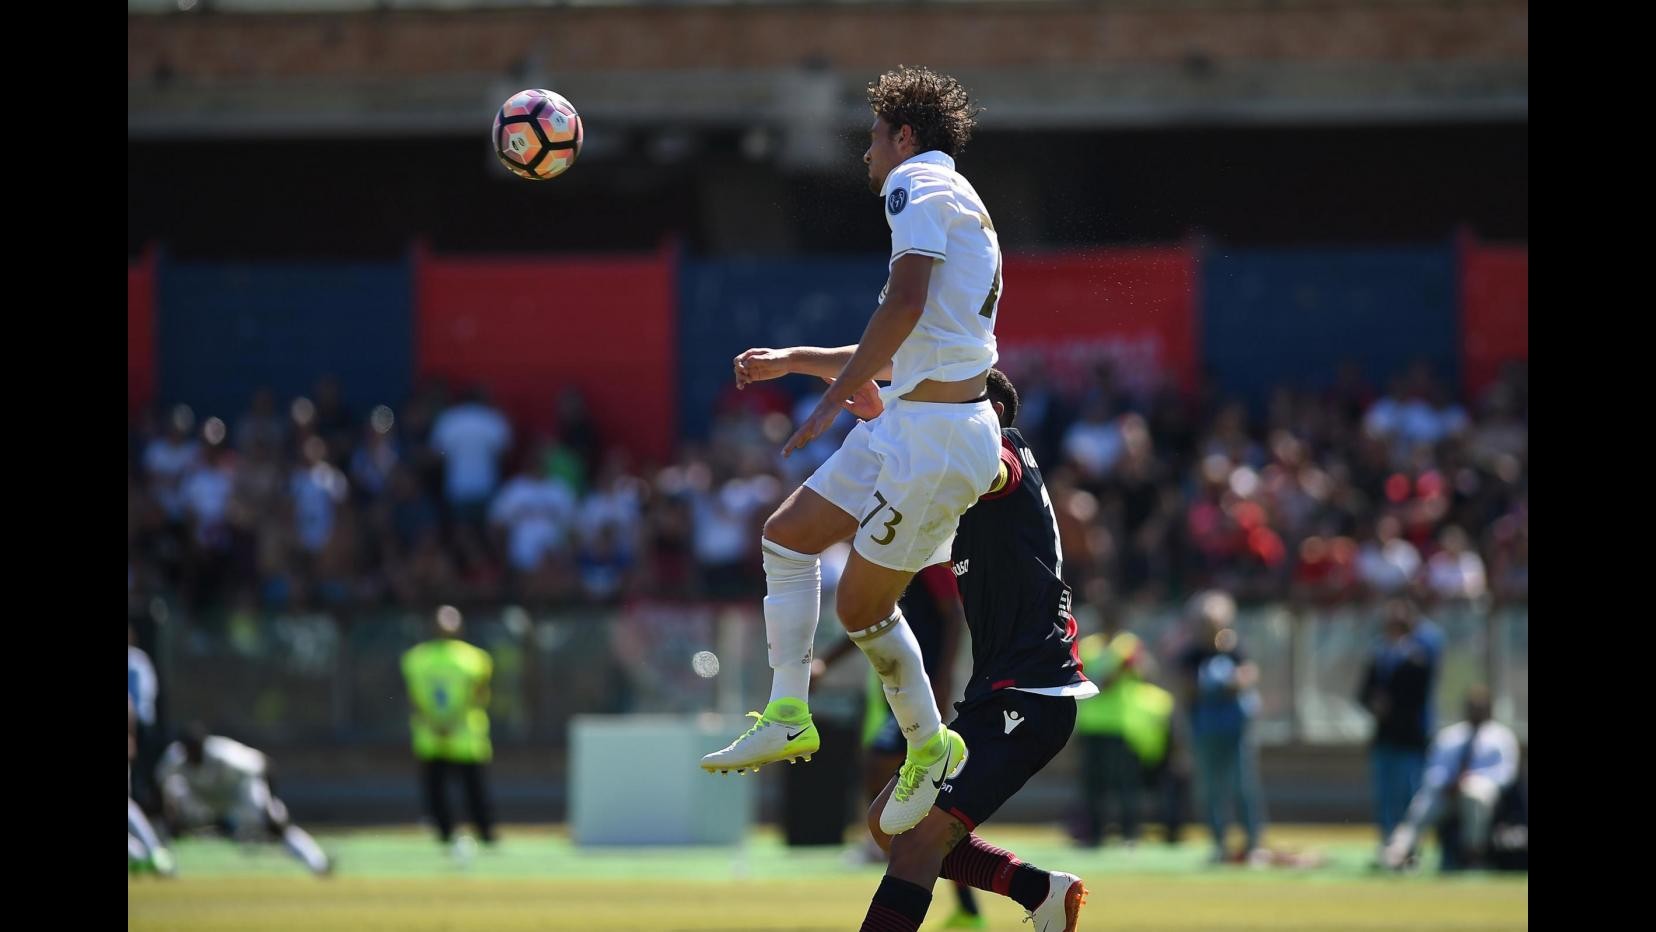 FOTO Ko Milan nell’ultima gara: il Cagliari vince 2-1